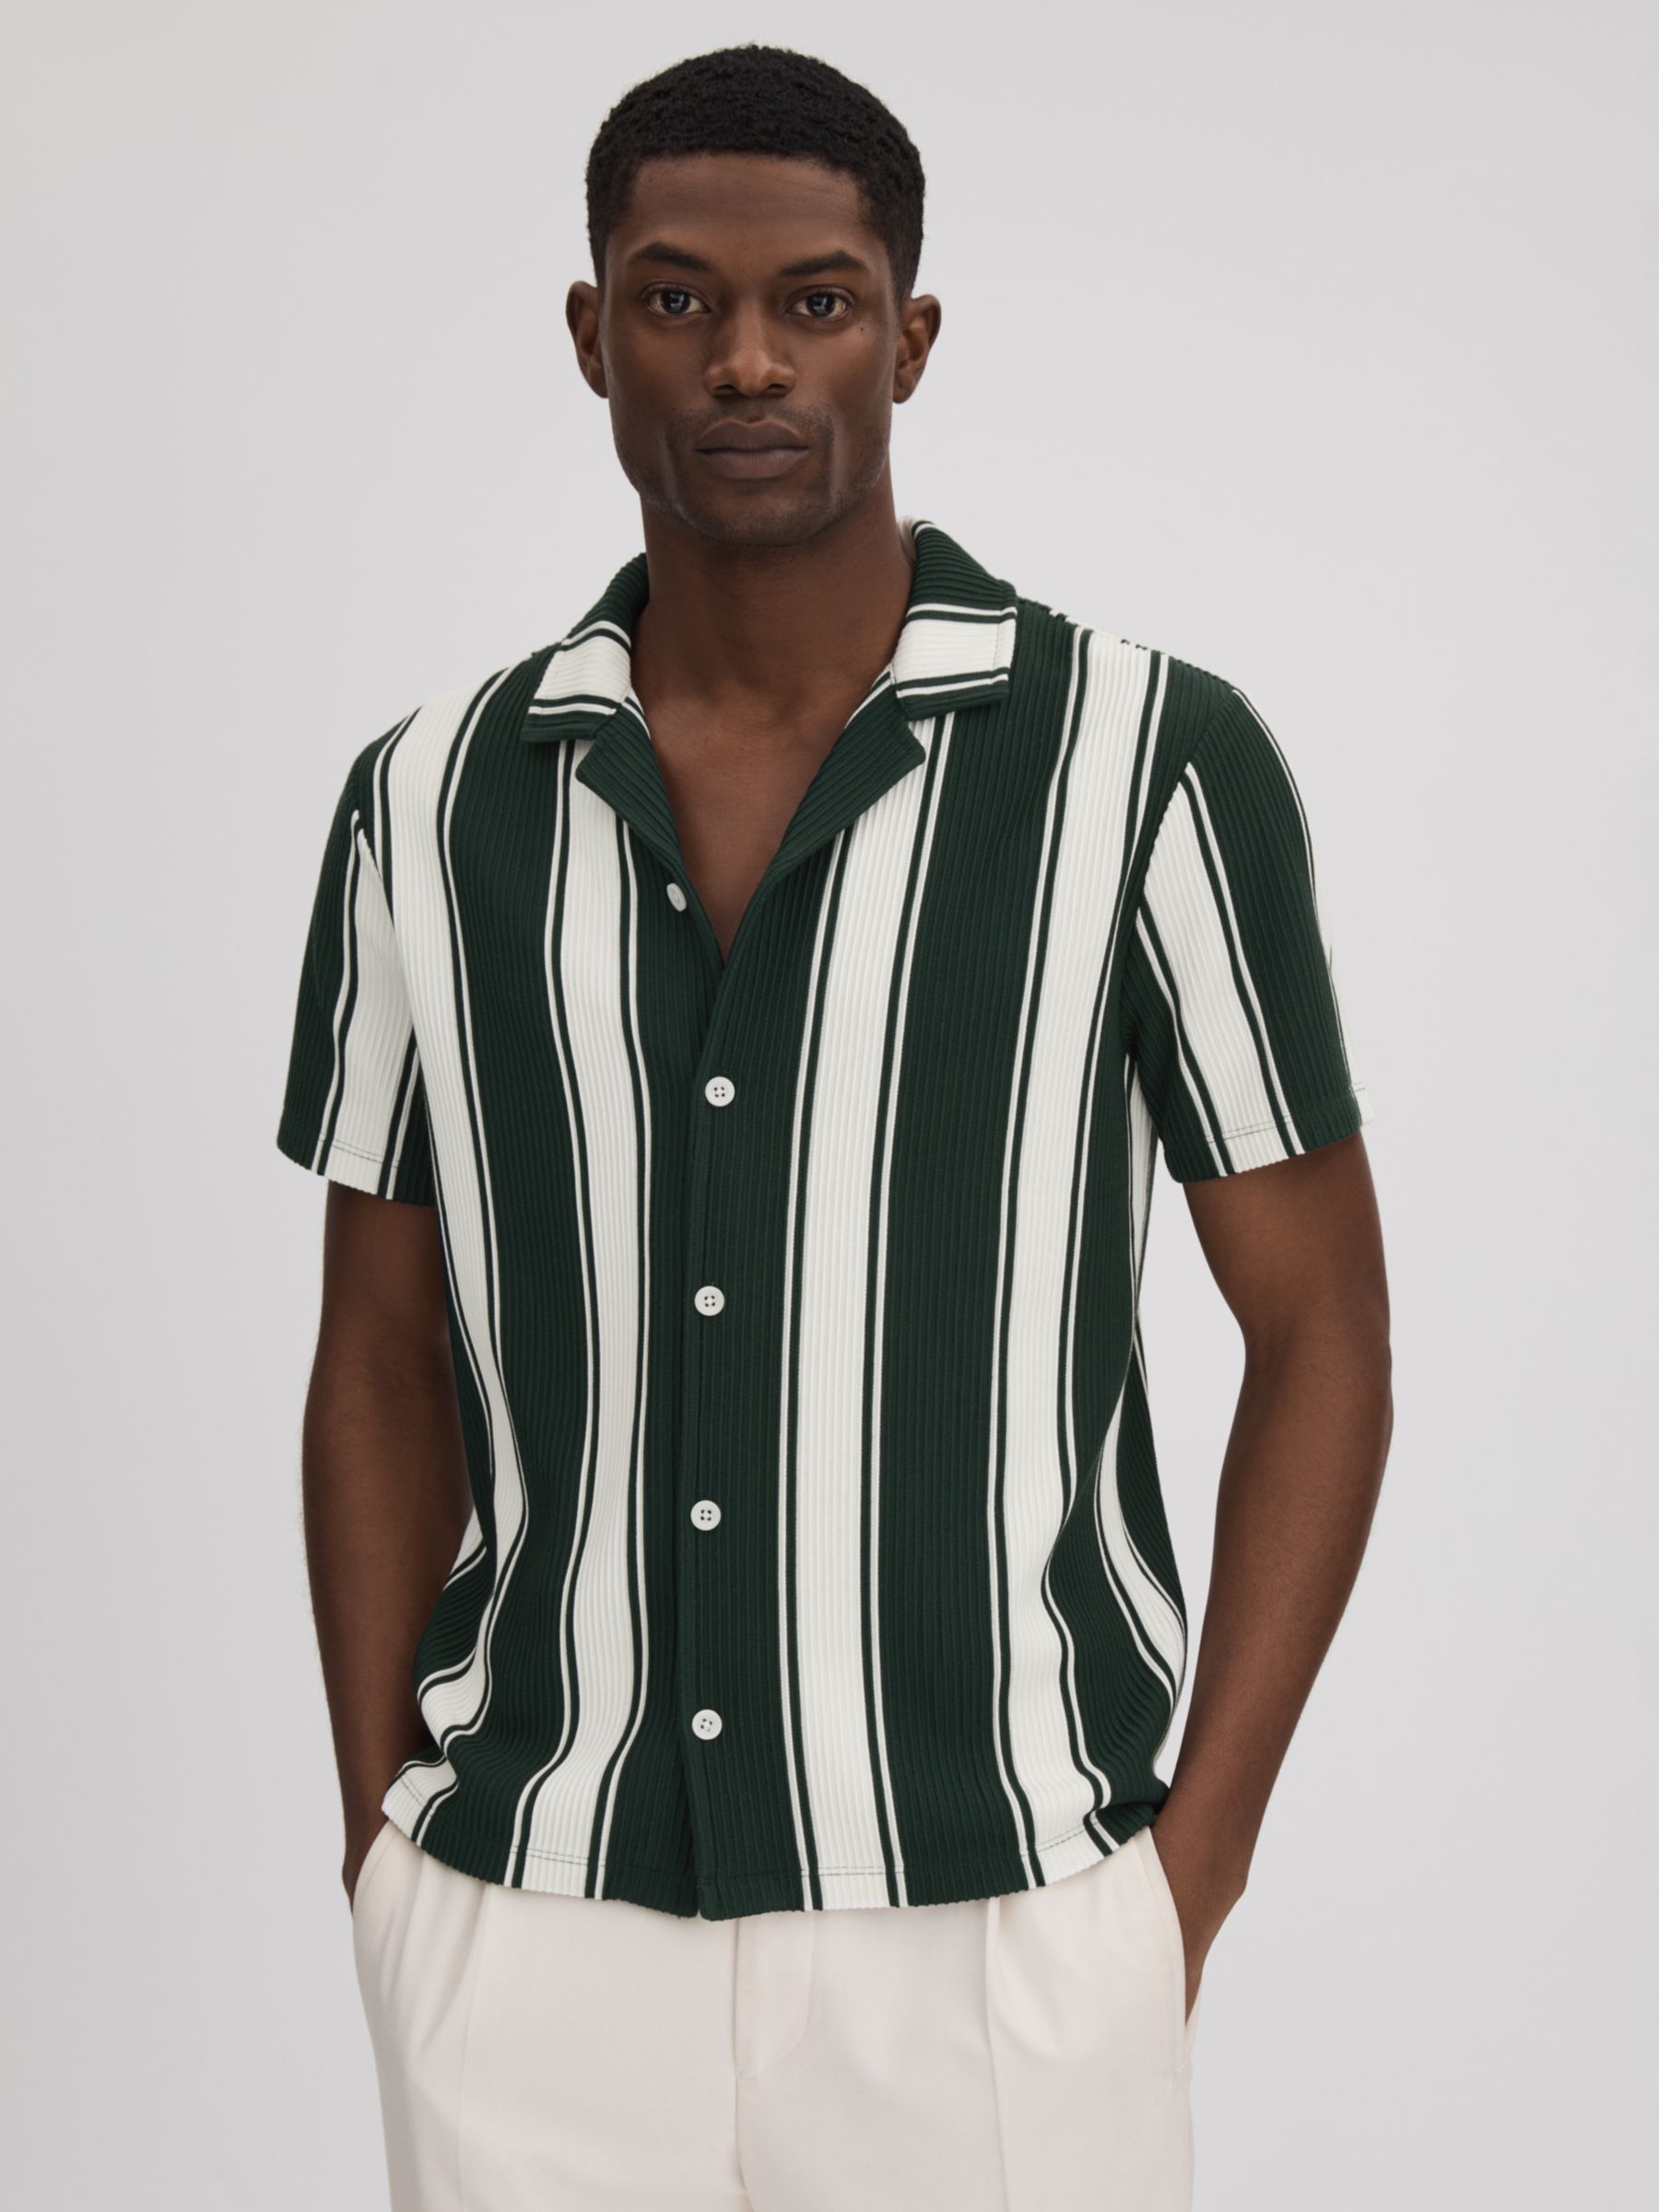 Reiss Alton Textured Stripe Shirt, Green/White at John Lewis & Partners